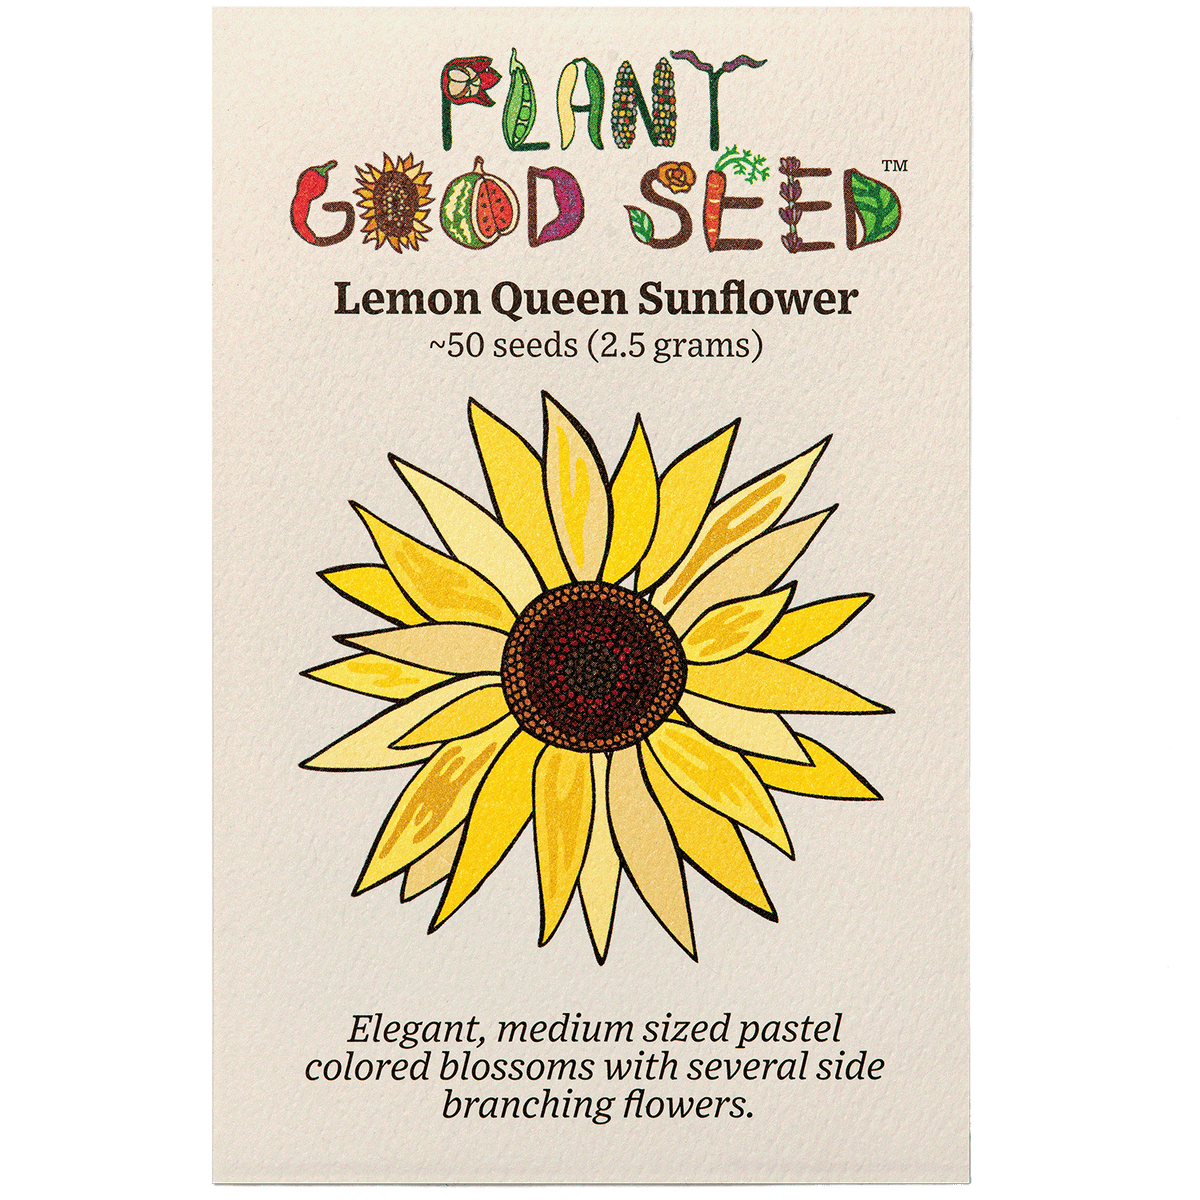 Lemon Queen Sunflower Seeds / Organic Seed Packet